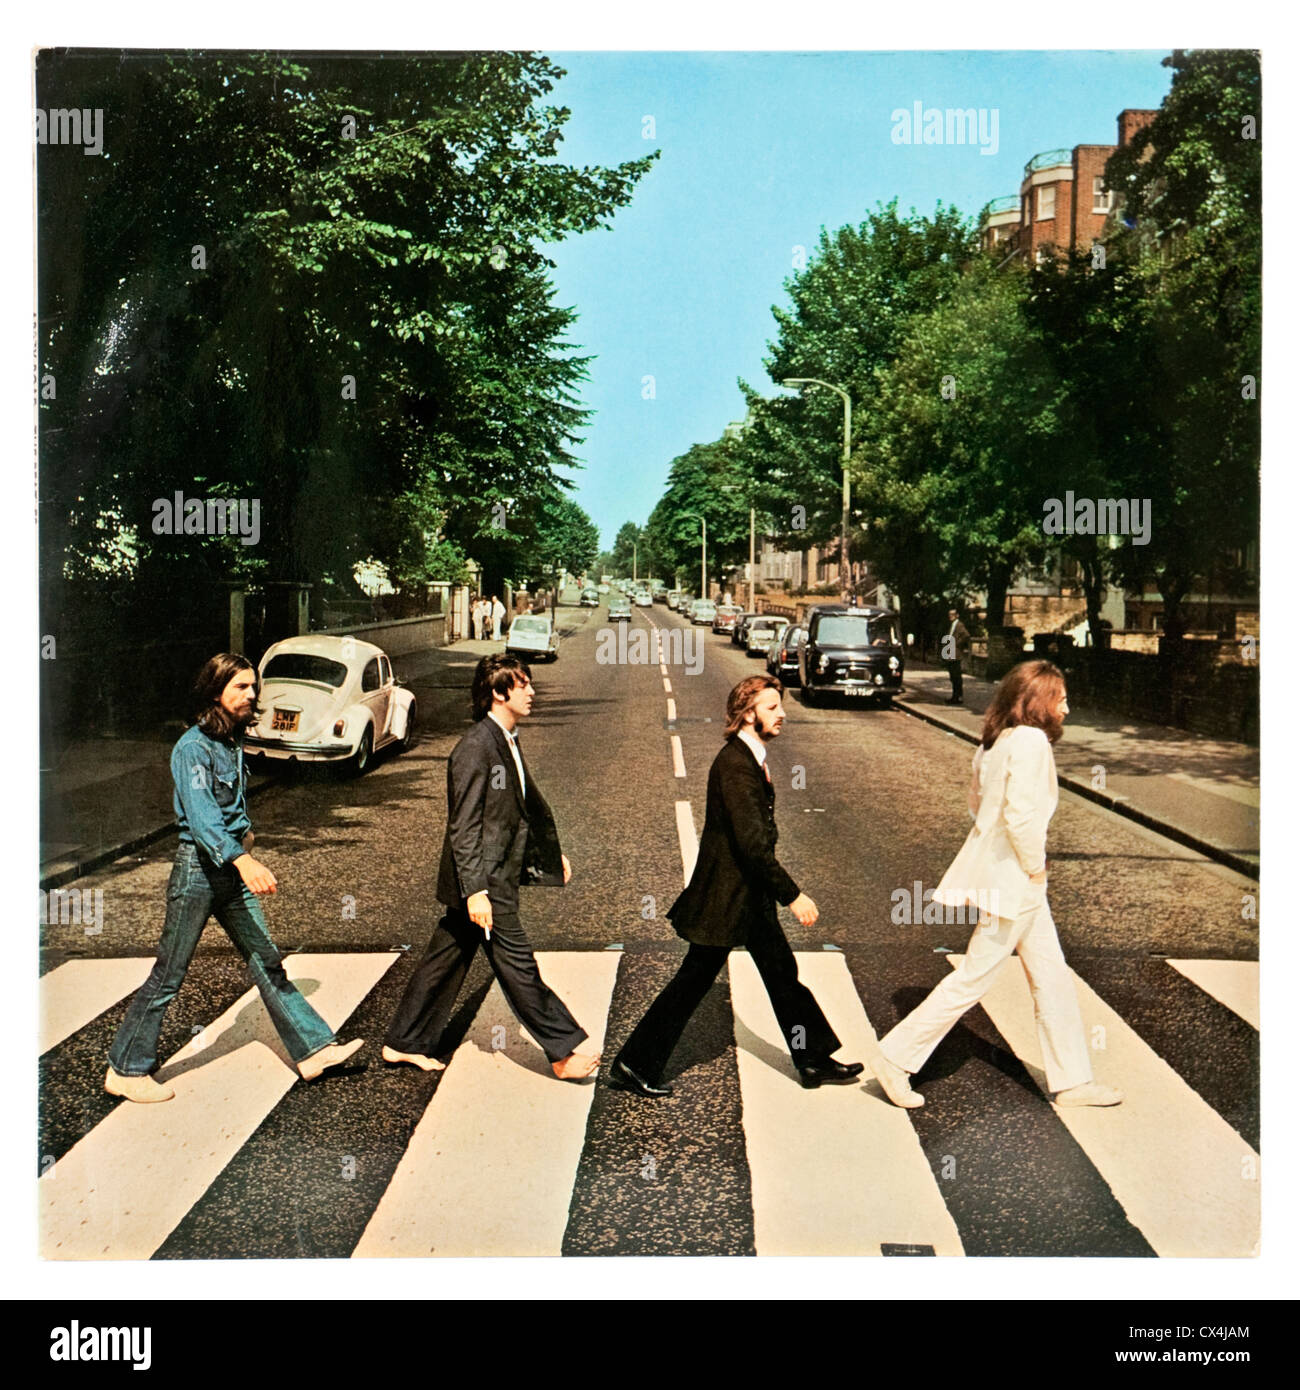 Abbey road immagini e fotografie stock ad alta risoluzione - Alamy